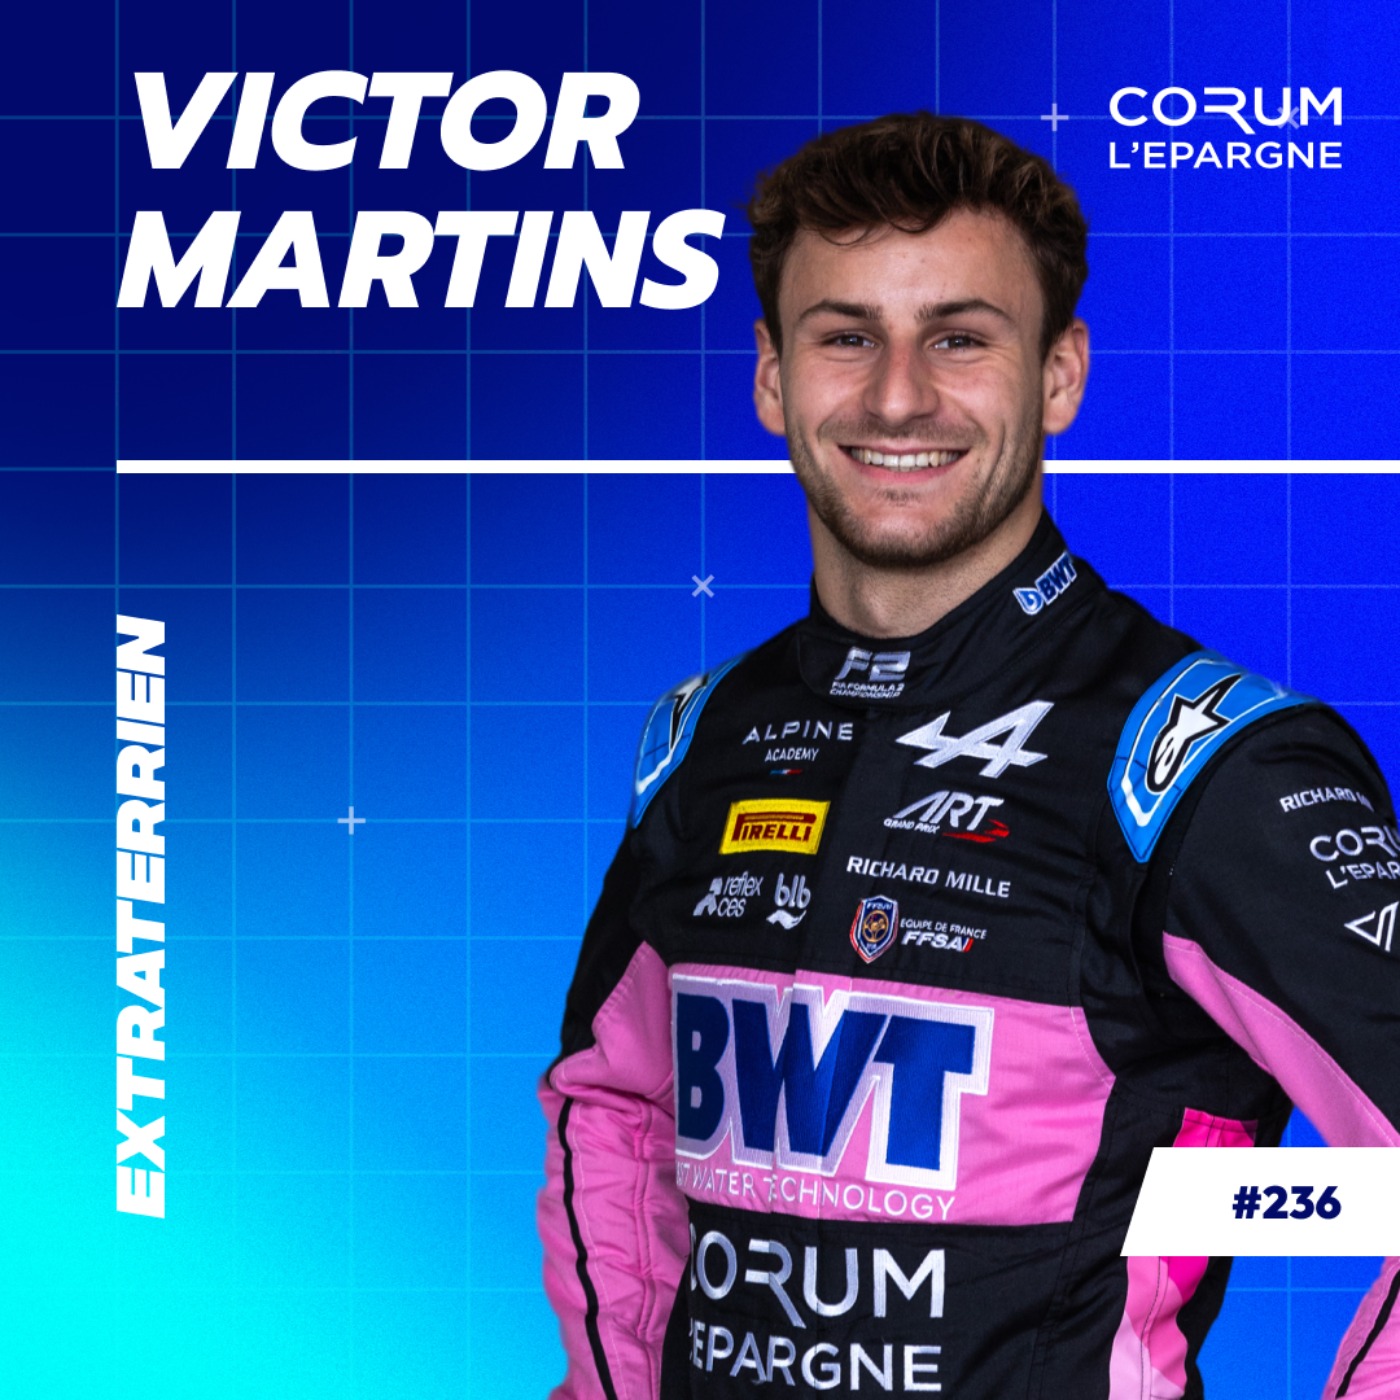 TEASER : Victor Martins - Le pilote prodige aux portes de la Formule 1